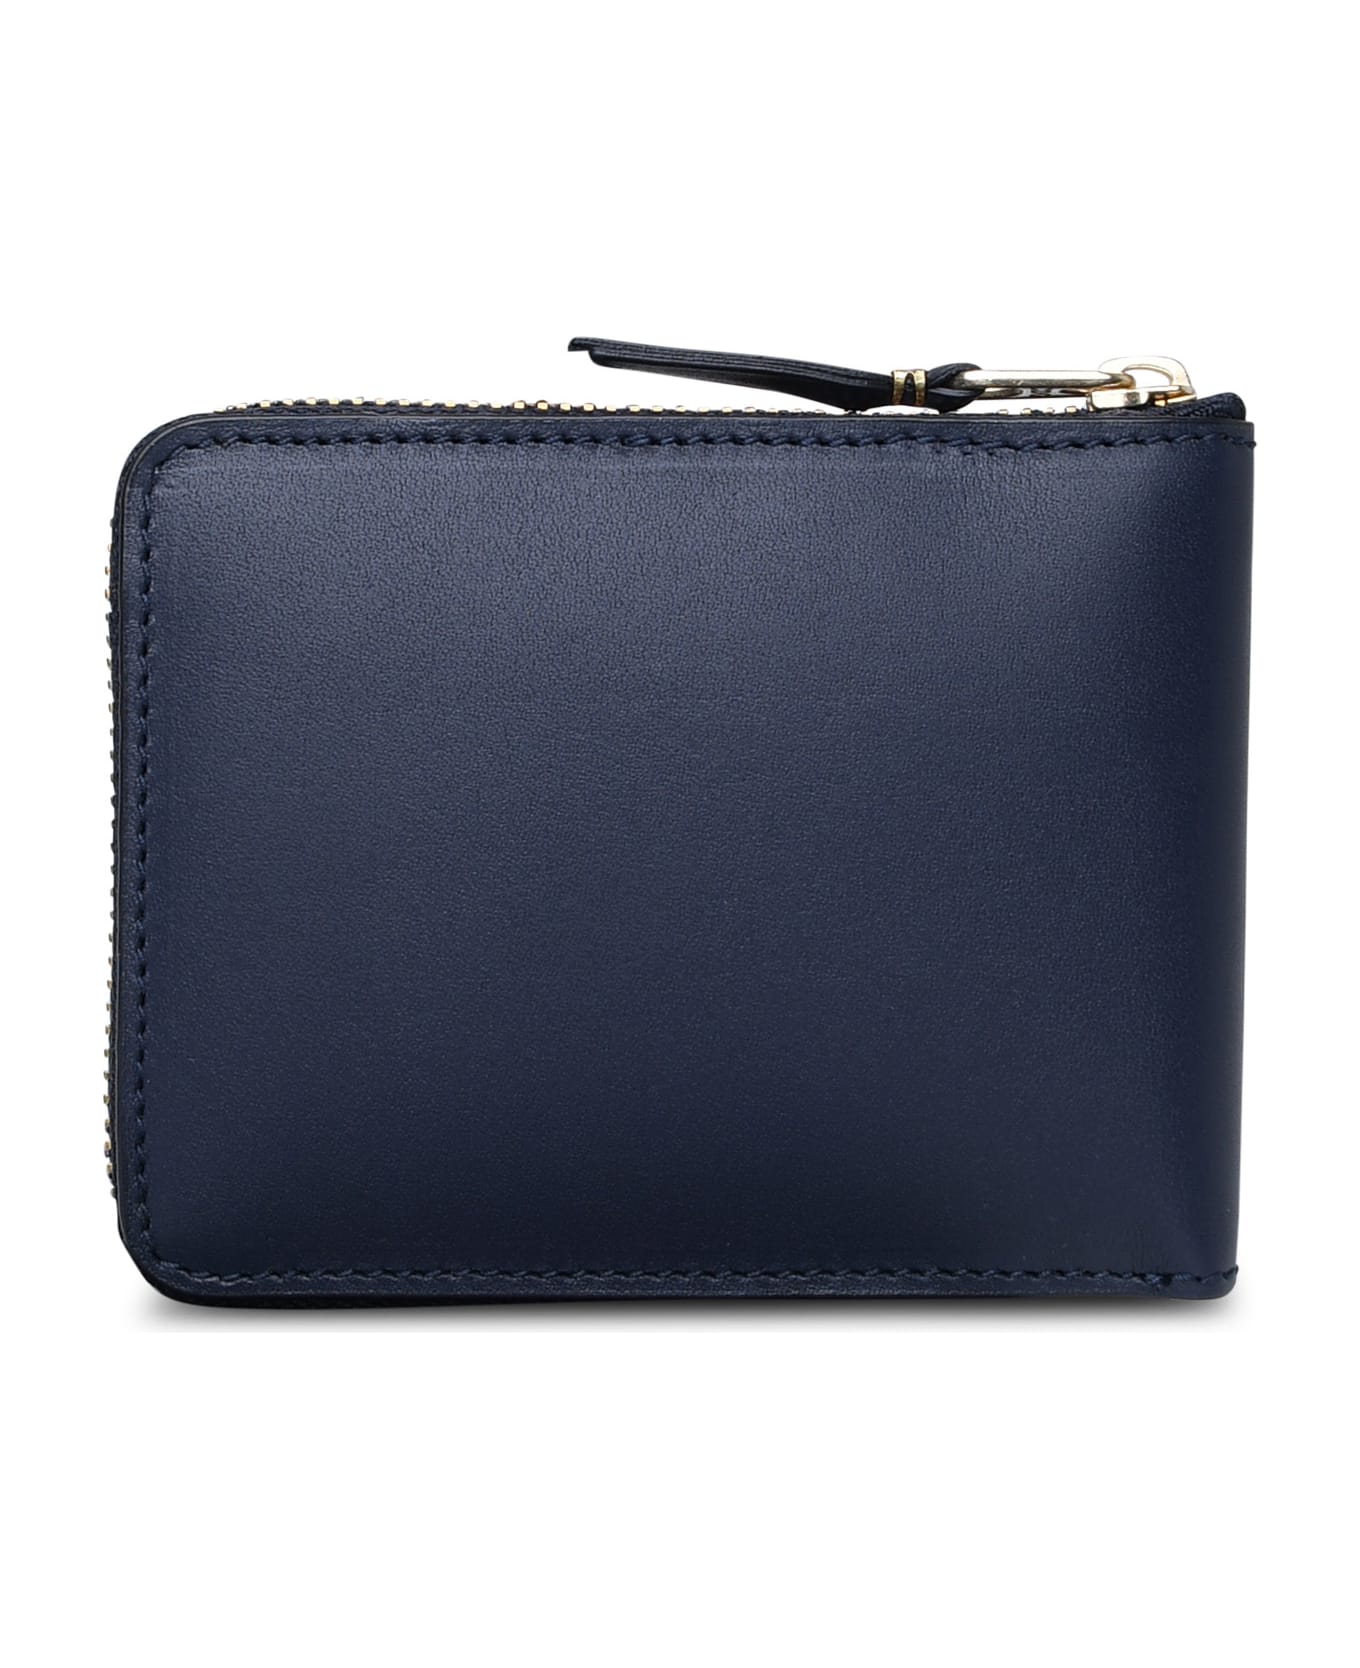 Comme des Garçons Wallet Blue Leather Wallet - Navy 財布